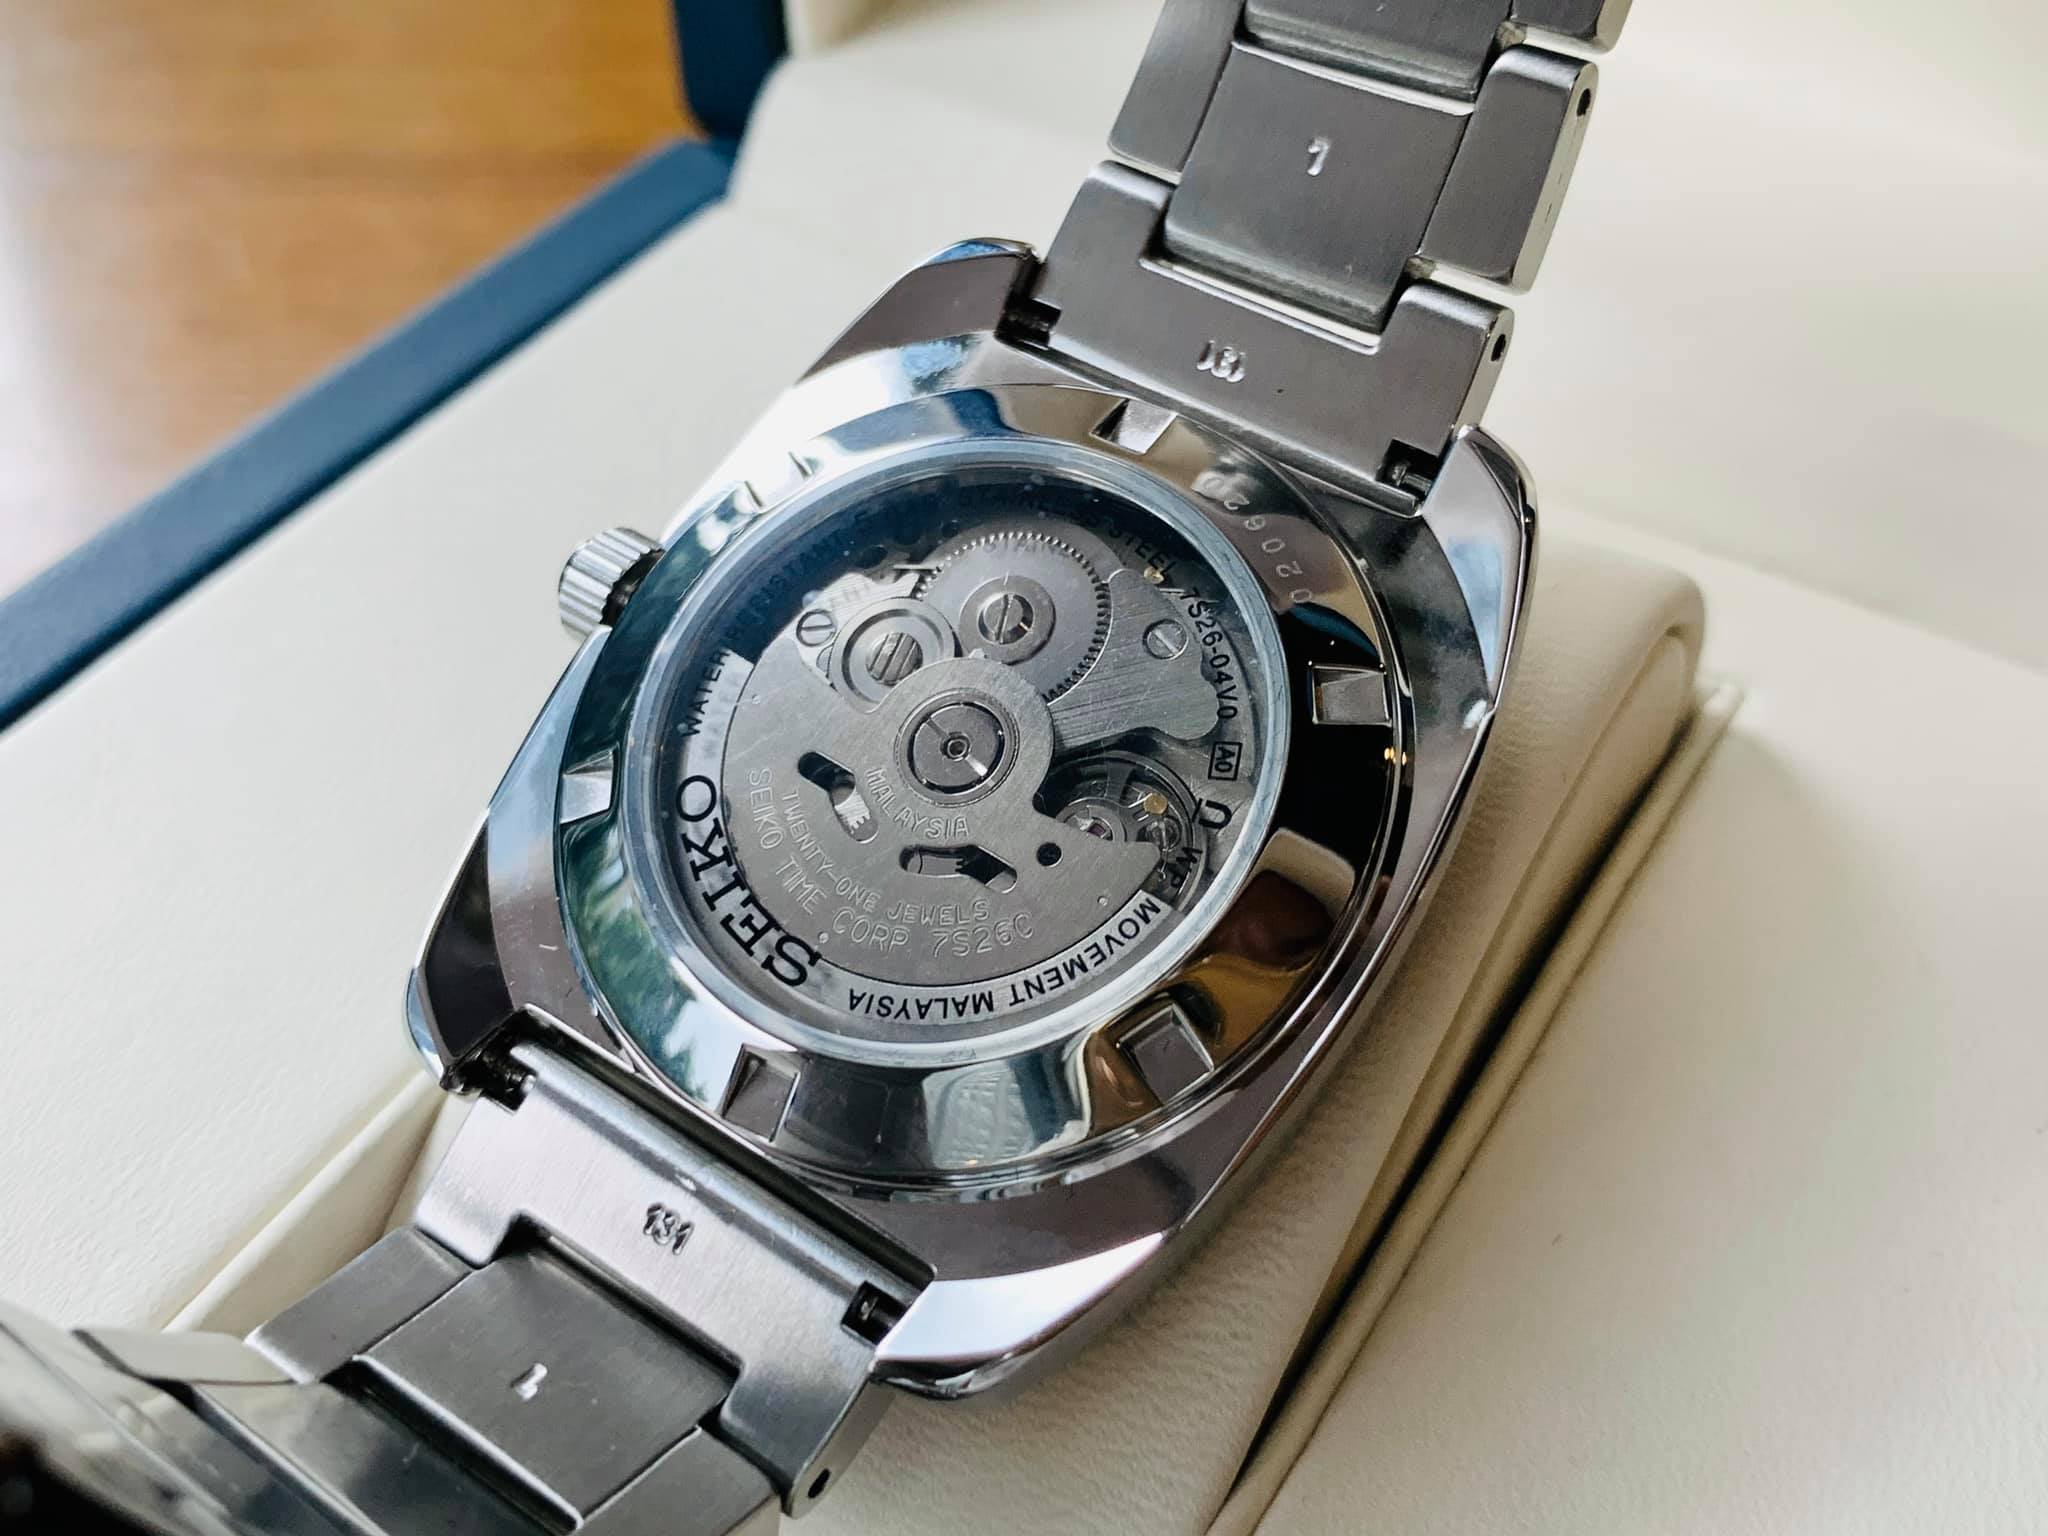 Đồng hồ nam Seiko SNKP23 RECRAFT thiết kế mạnh mẽ với mặt vuông nam tính -  Benwatchs chuyên cung cấp đồng hồ chính hãng giá tốt